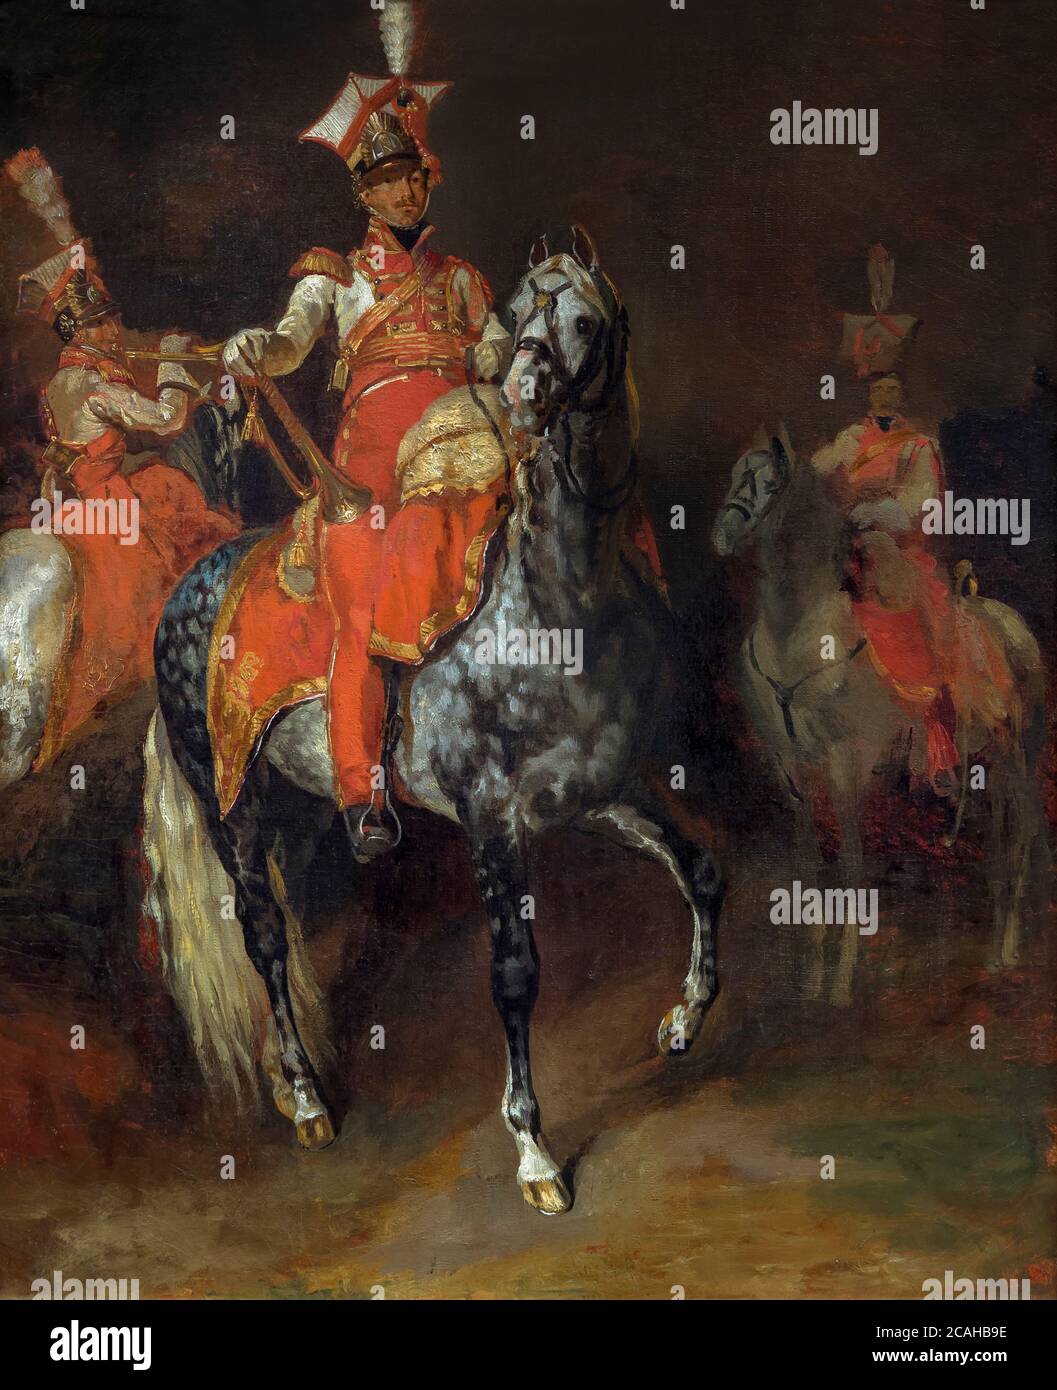 Los trompetistas montados de la Guardia Imperial de Napoleón, Theodore Gericault, 1813-1814, National Gallery of Art, Washington, DC, Estados Unidos de América, América del Norte Foto de stock